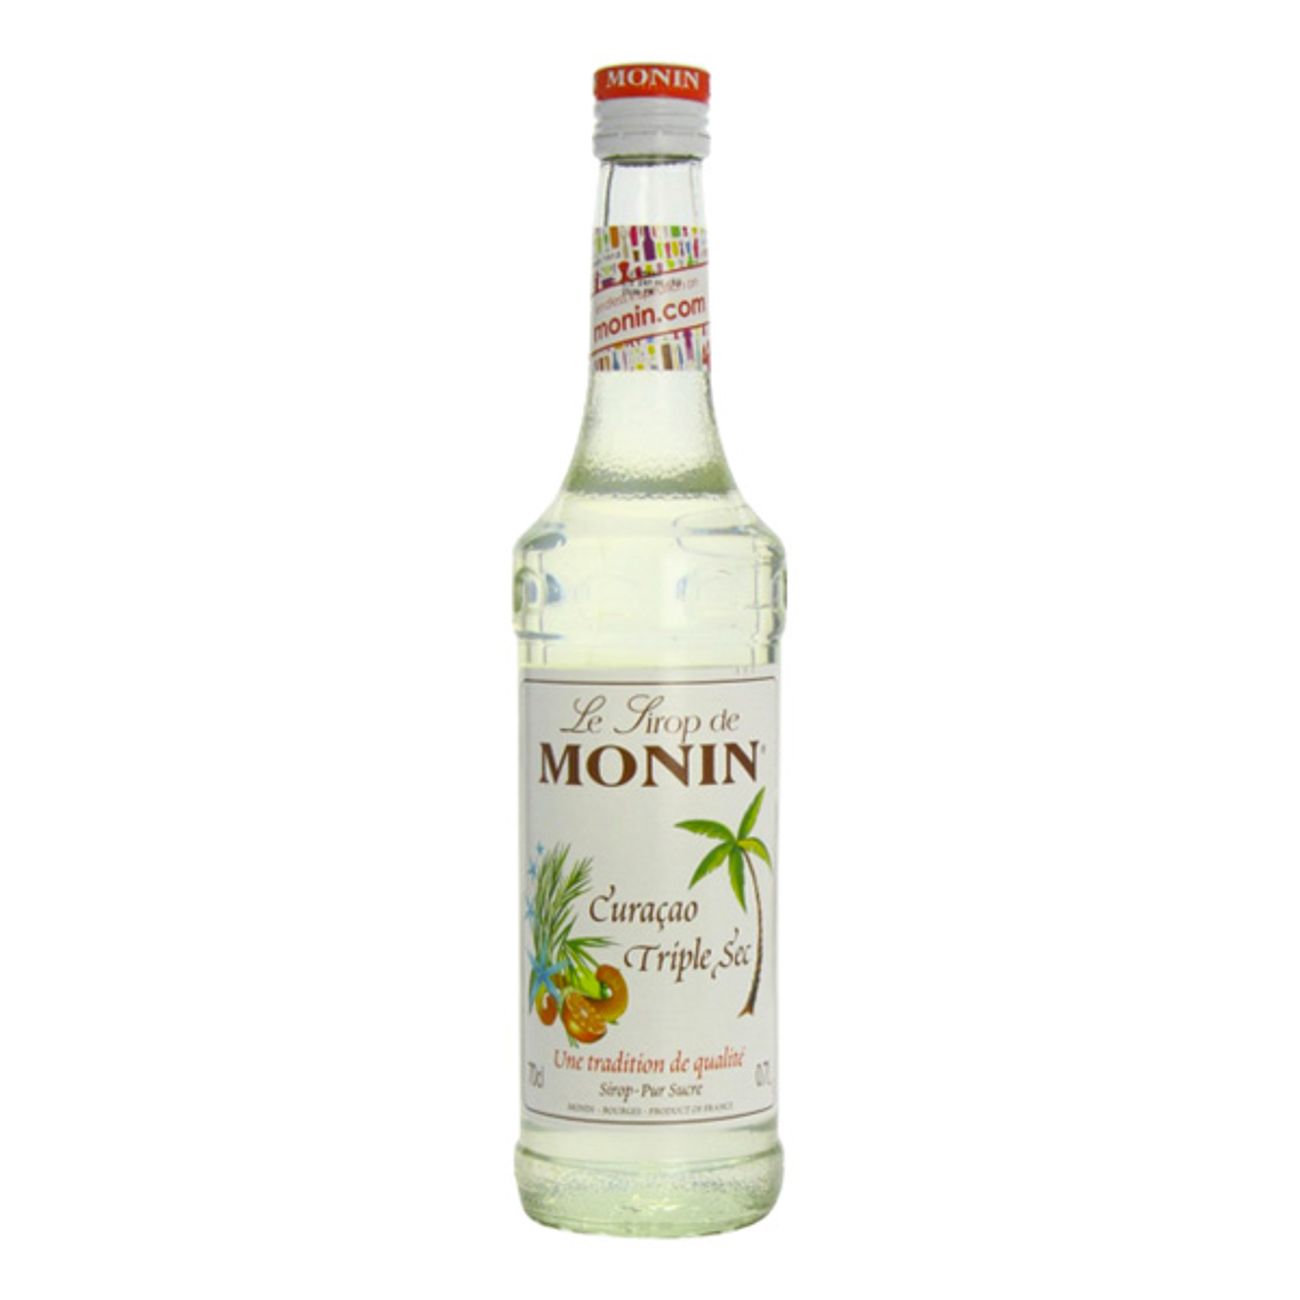 monin-apelsin-curacao-triple-sec-drinkmix-1